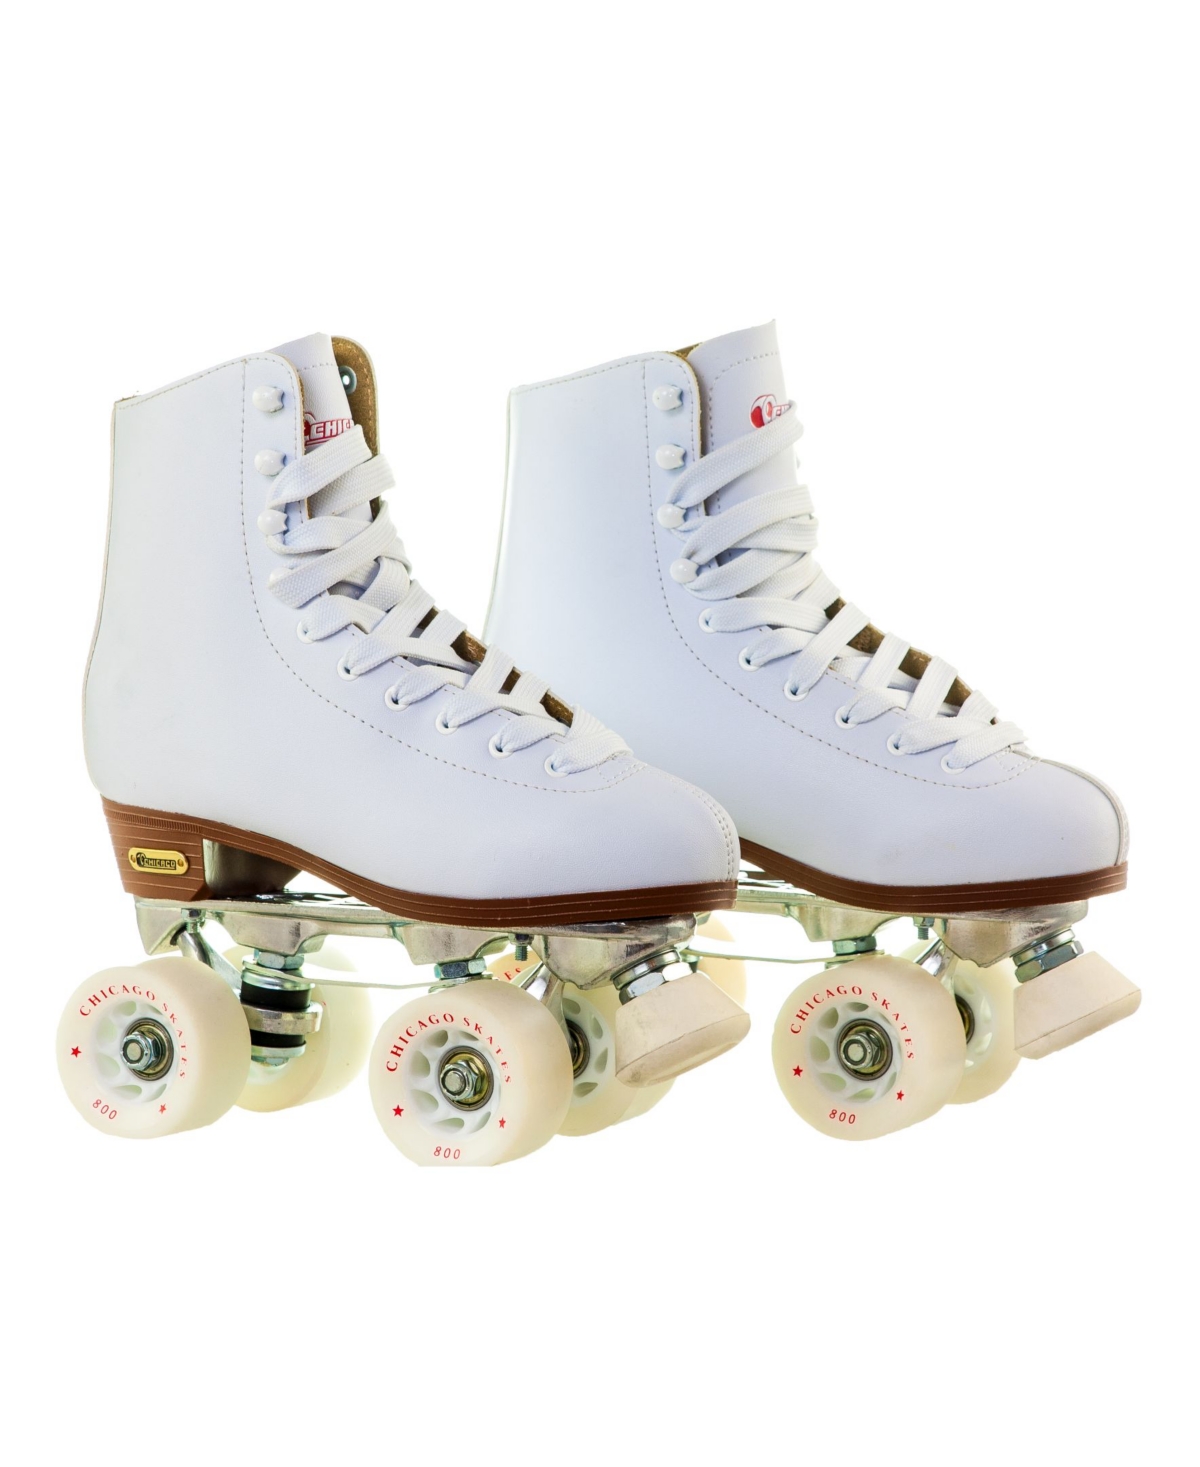 Women's Deluxe Quad Roller Rink Skates - Size 6 - White